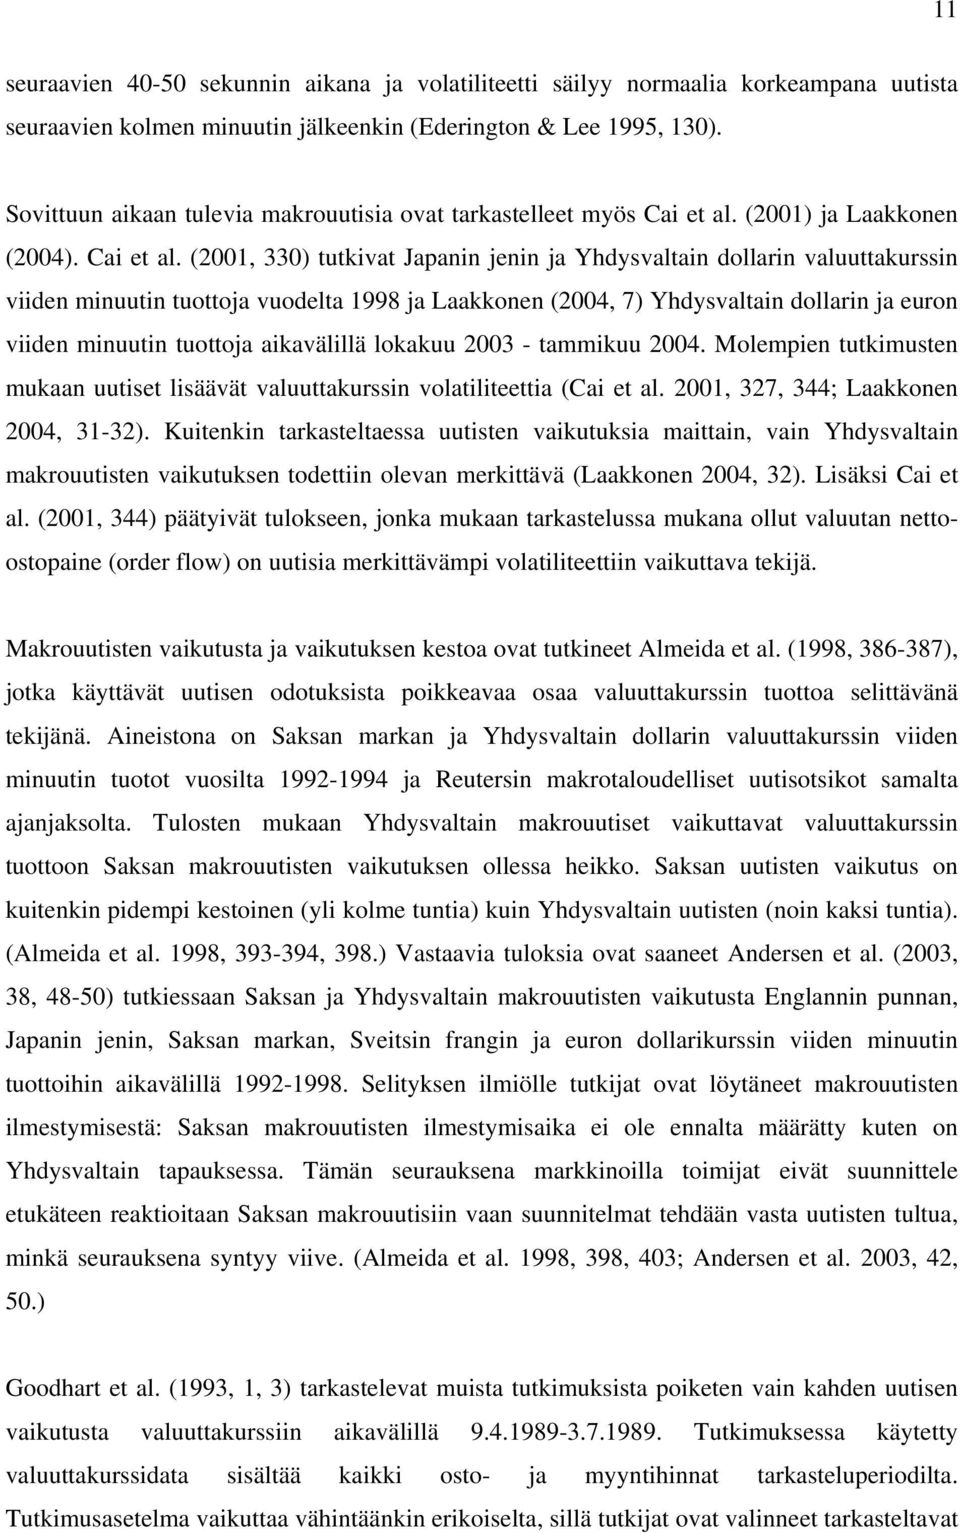 (2001) ja Laakkonen (2004). Cai et al.